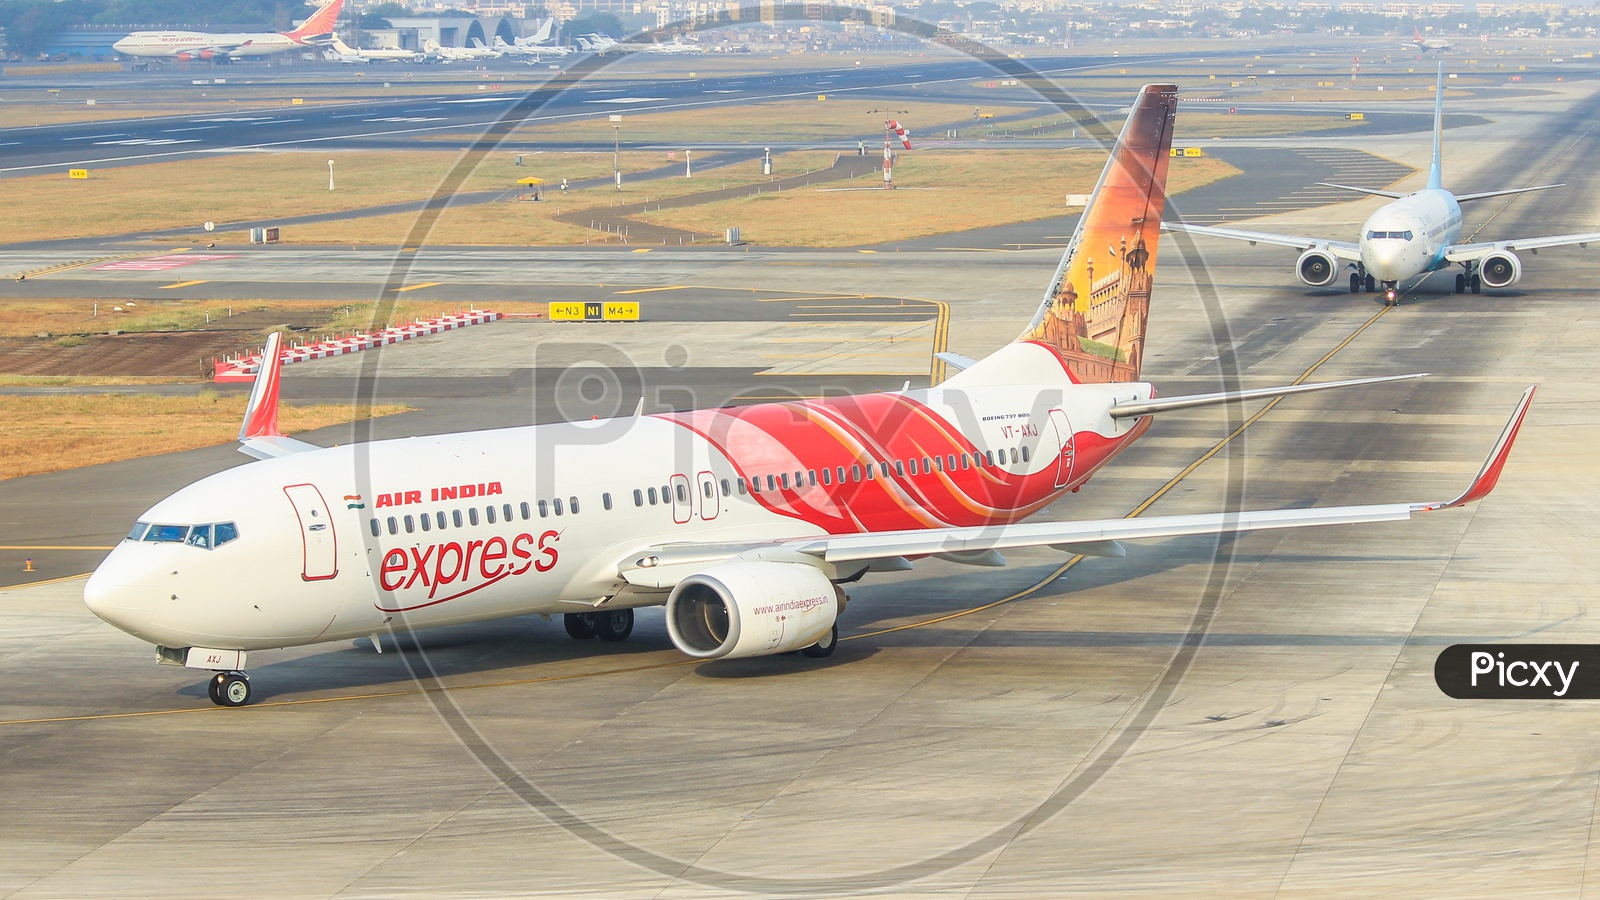 Air India express B737